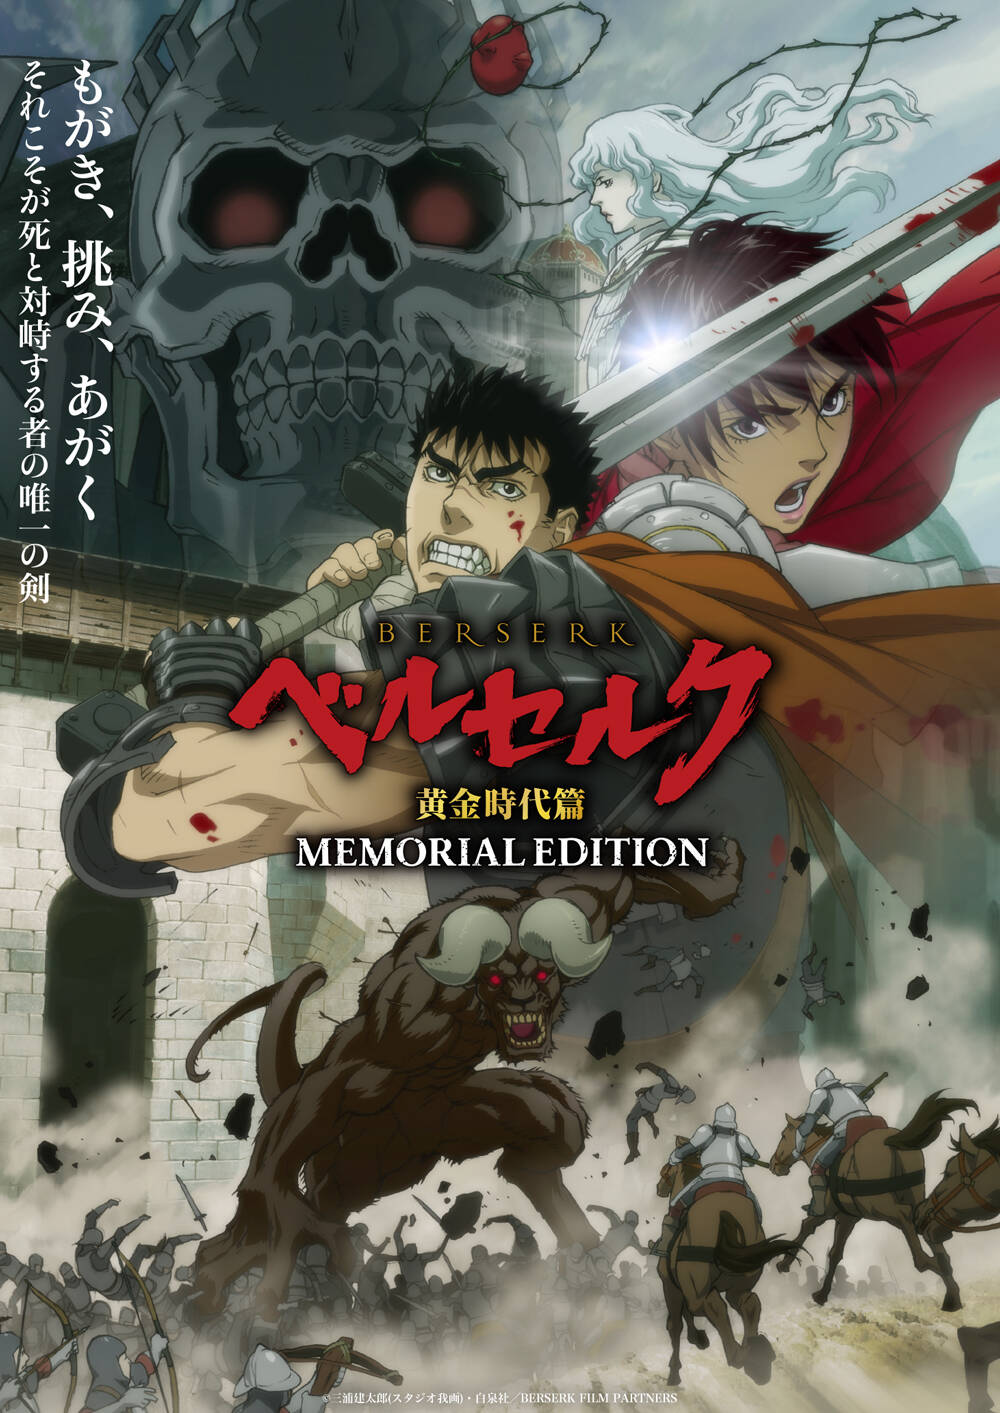 [猎户随缘压制] 剑风传奇/烙印勇士 黄金时代篇 MEMORIAL EDITION Berserk: Ougon Jidai-hen - Memorial Edition [02] [1080p] [简中内嵌] [2022年10月番]